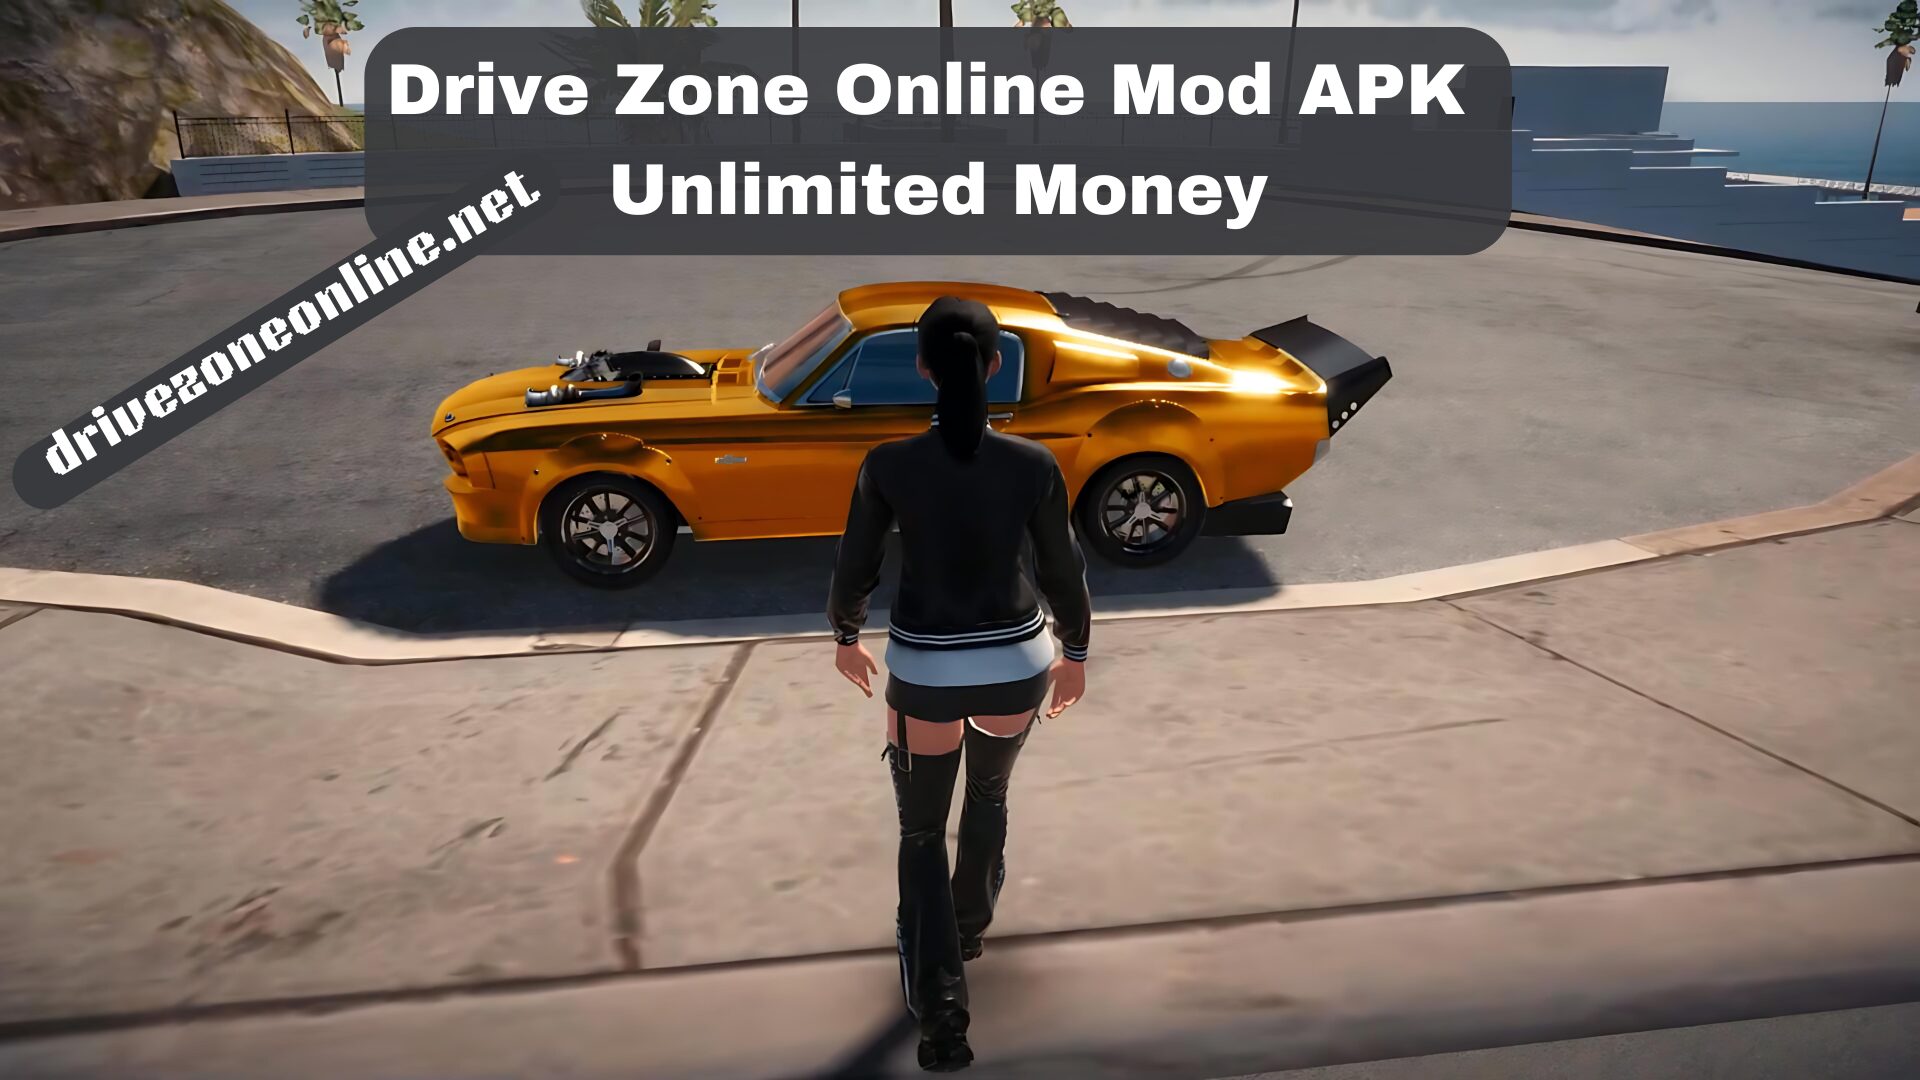 Drive Zone Online Mod APK Unlimited Money